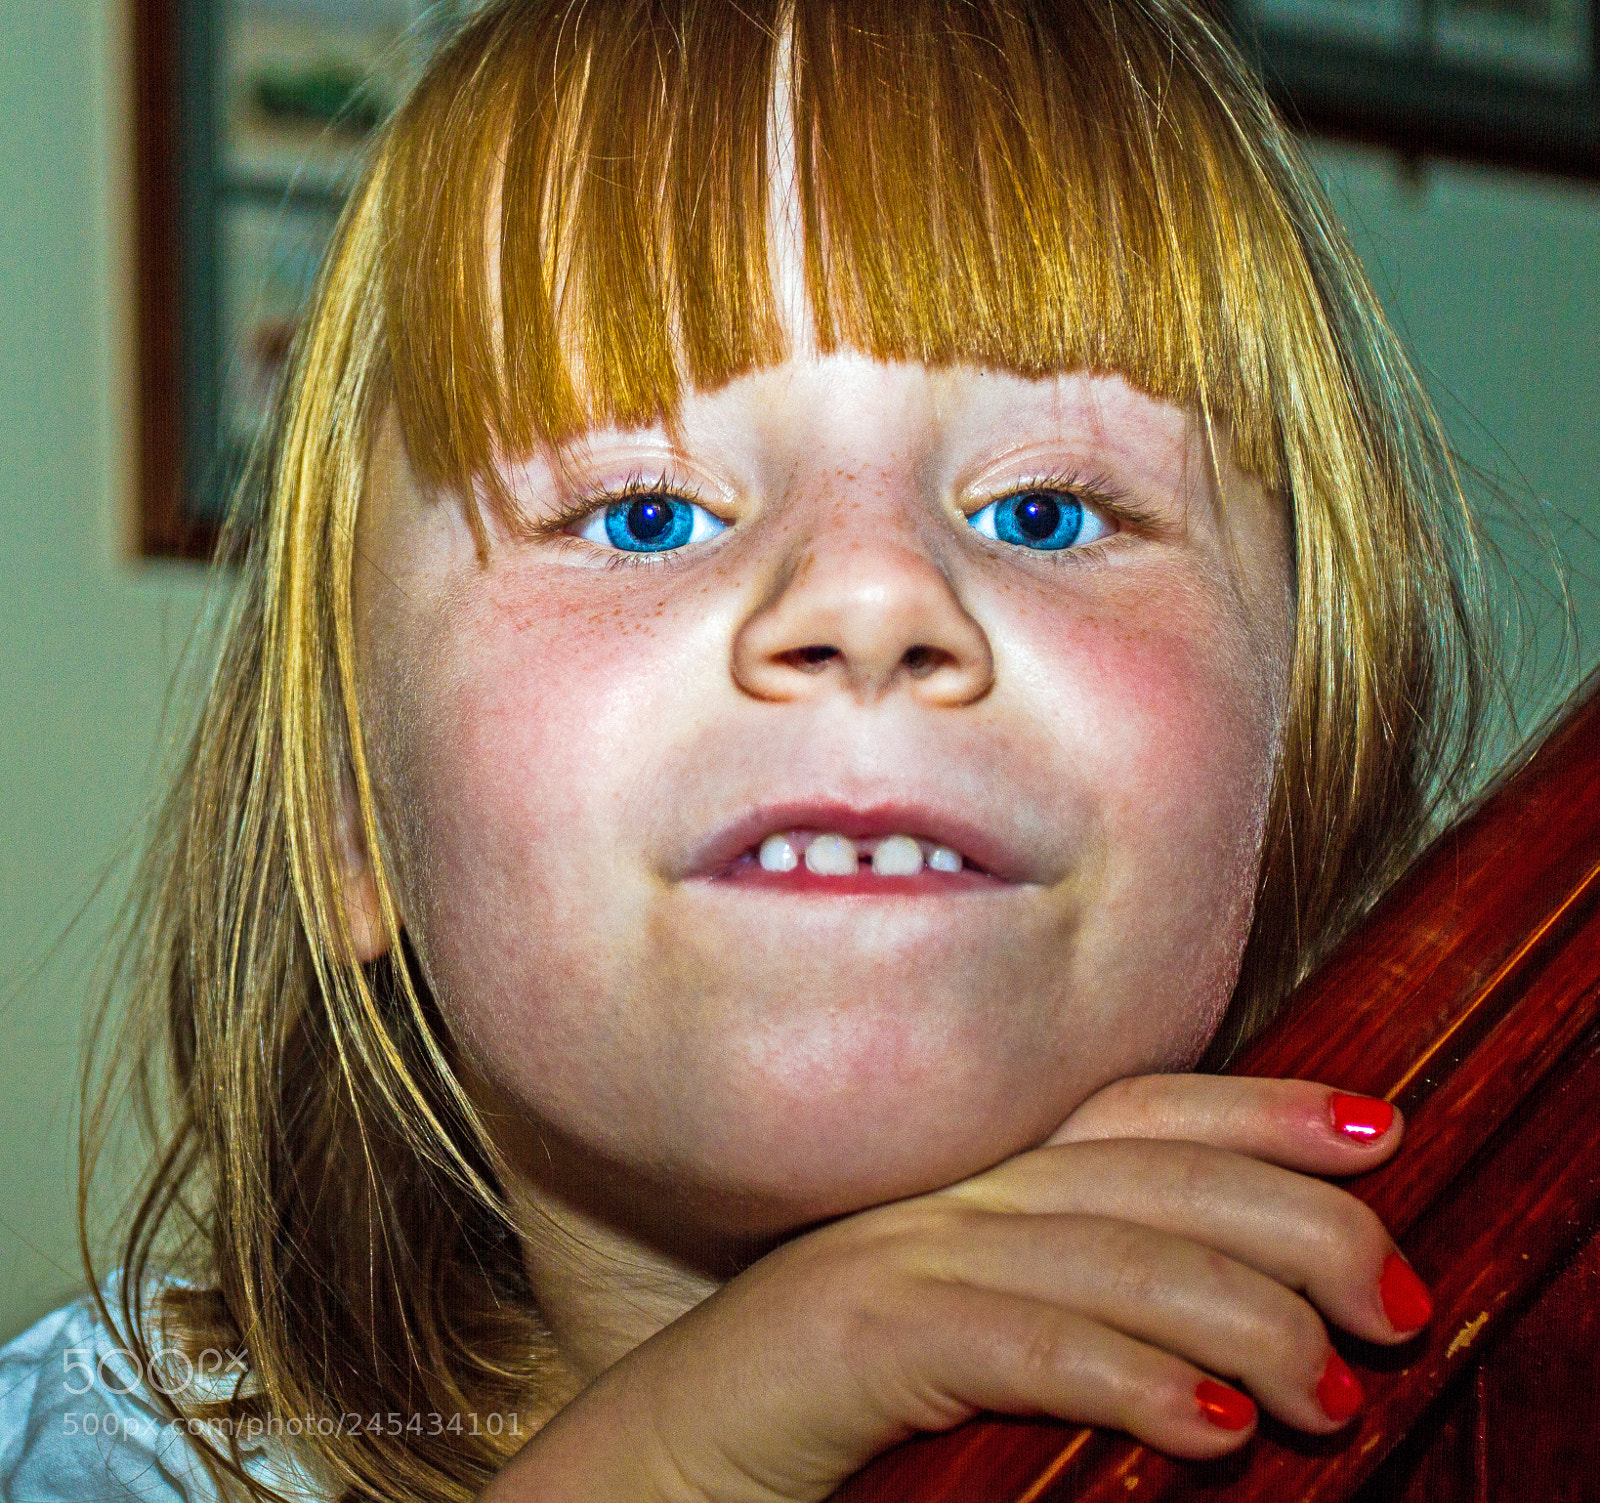 Canon EOS 7D sample photo. Child portrait photography